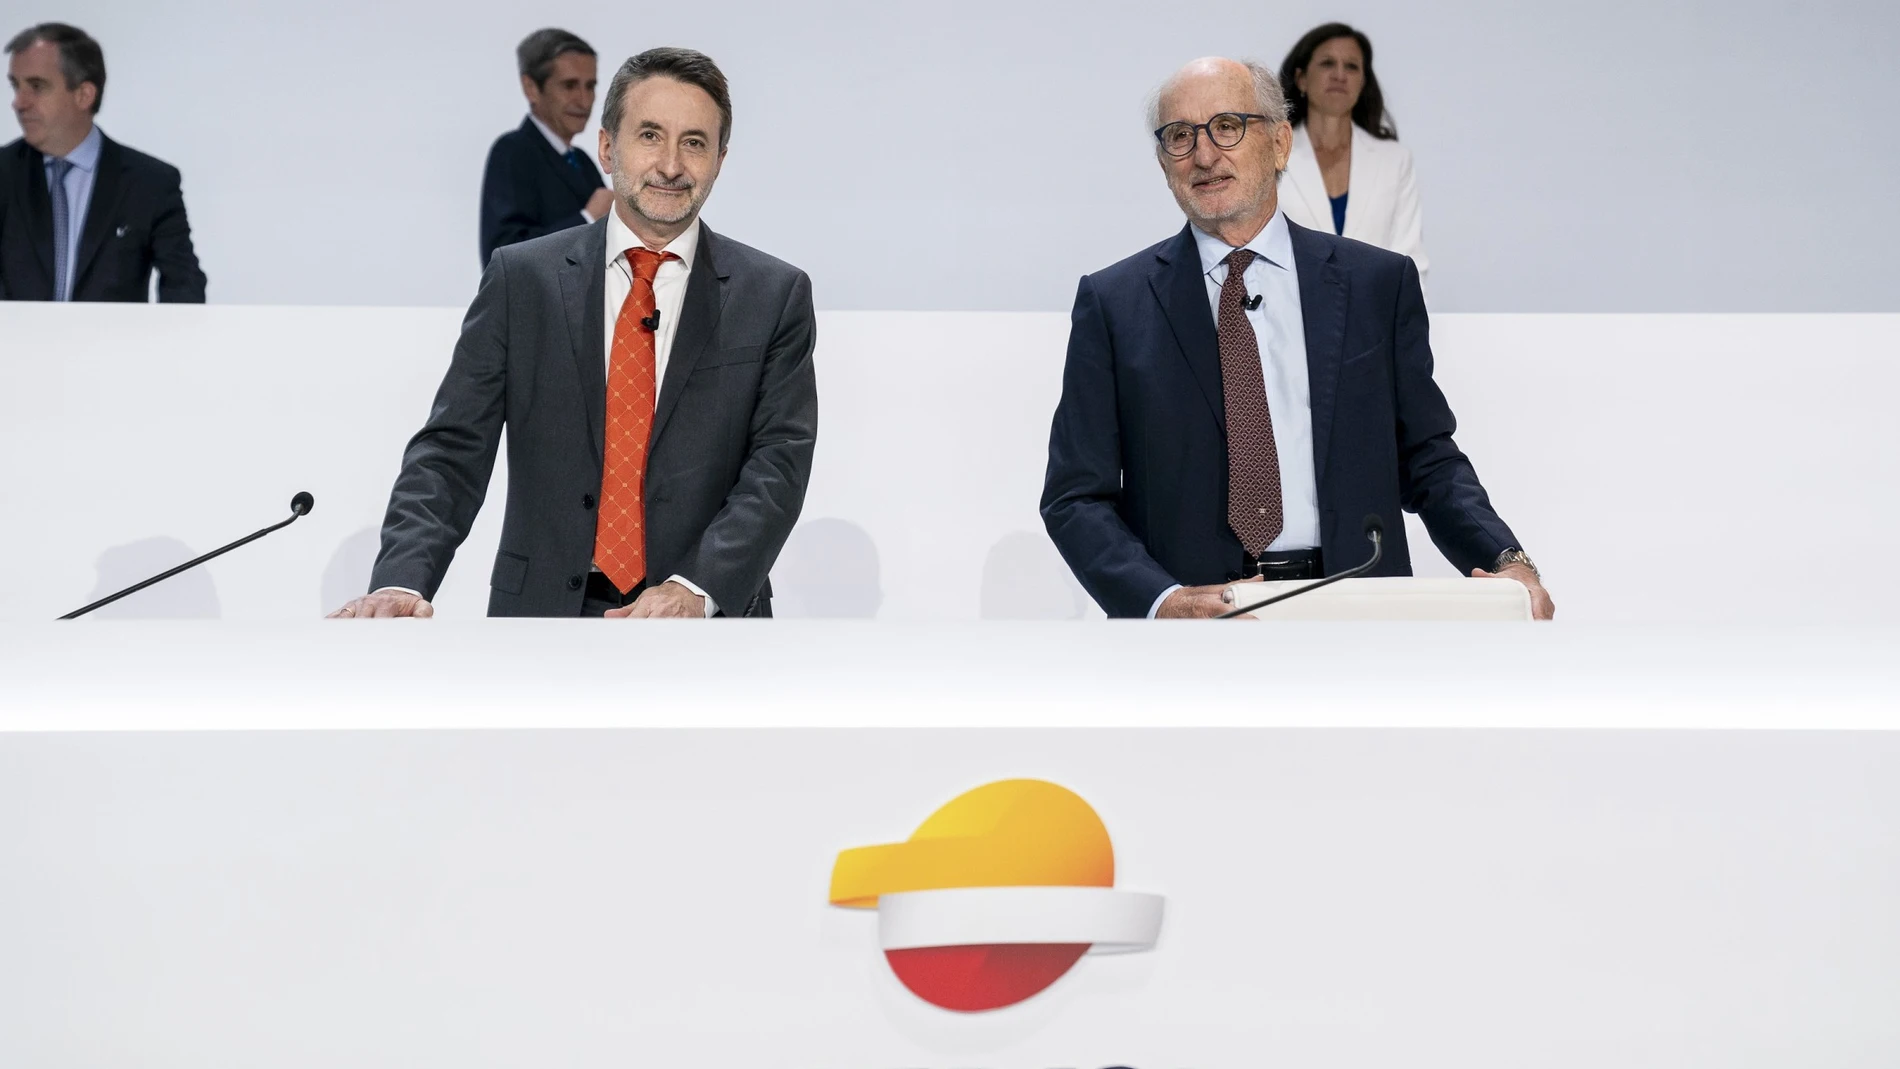 El consejero delegado de Repsol, Josu Jon Imaz, y el presidente de Repsol, Antonio Brufau, durante la última junta general de accionistas